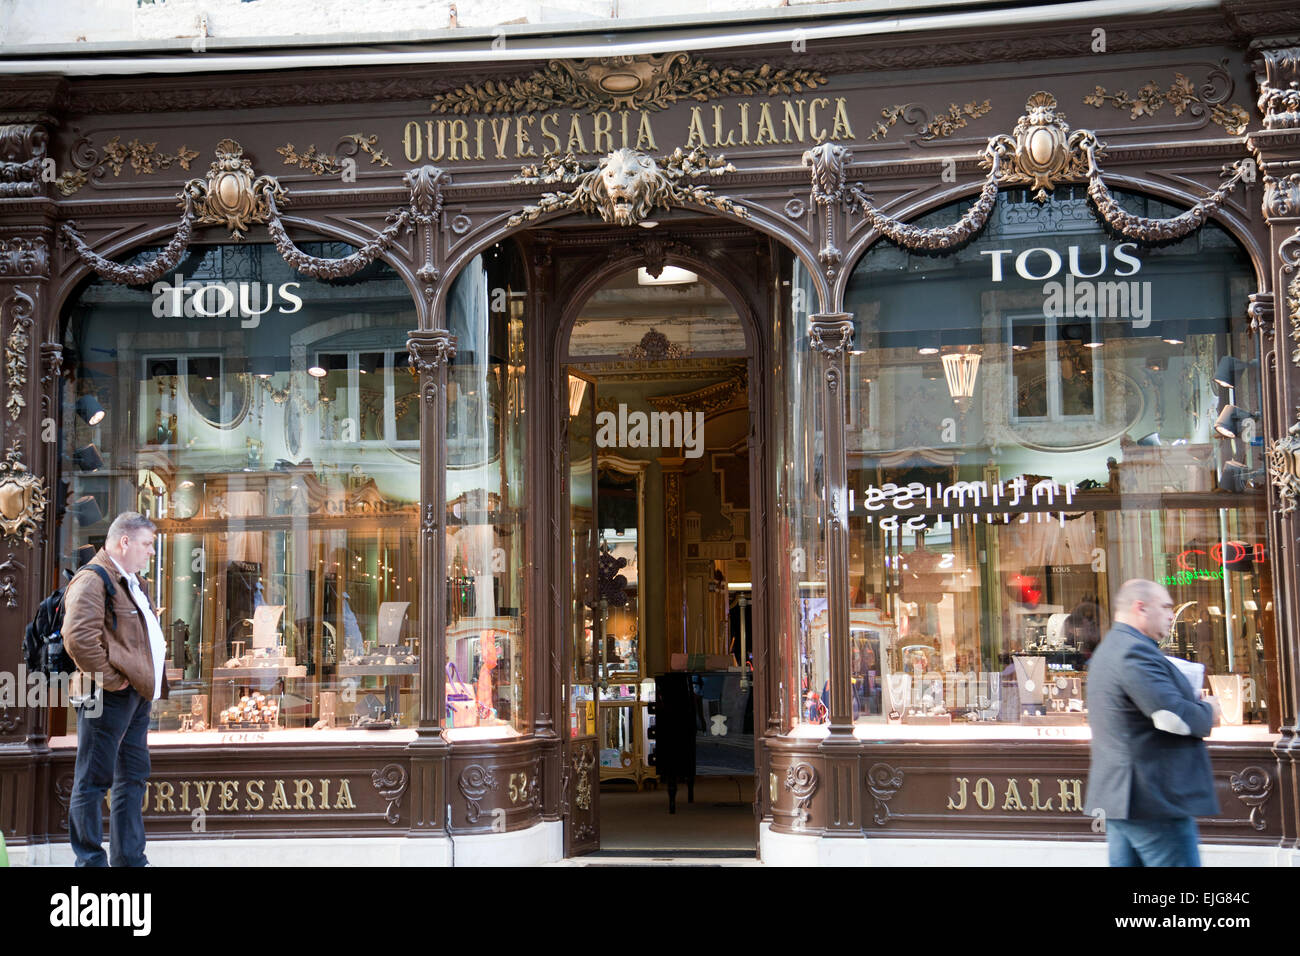 Ourivesaria Alianca Jewellery Boutique on Rua Garrett in Lisbon - Portugal Stock Photo